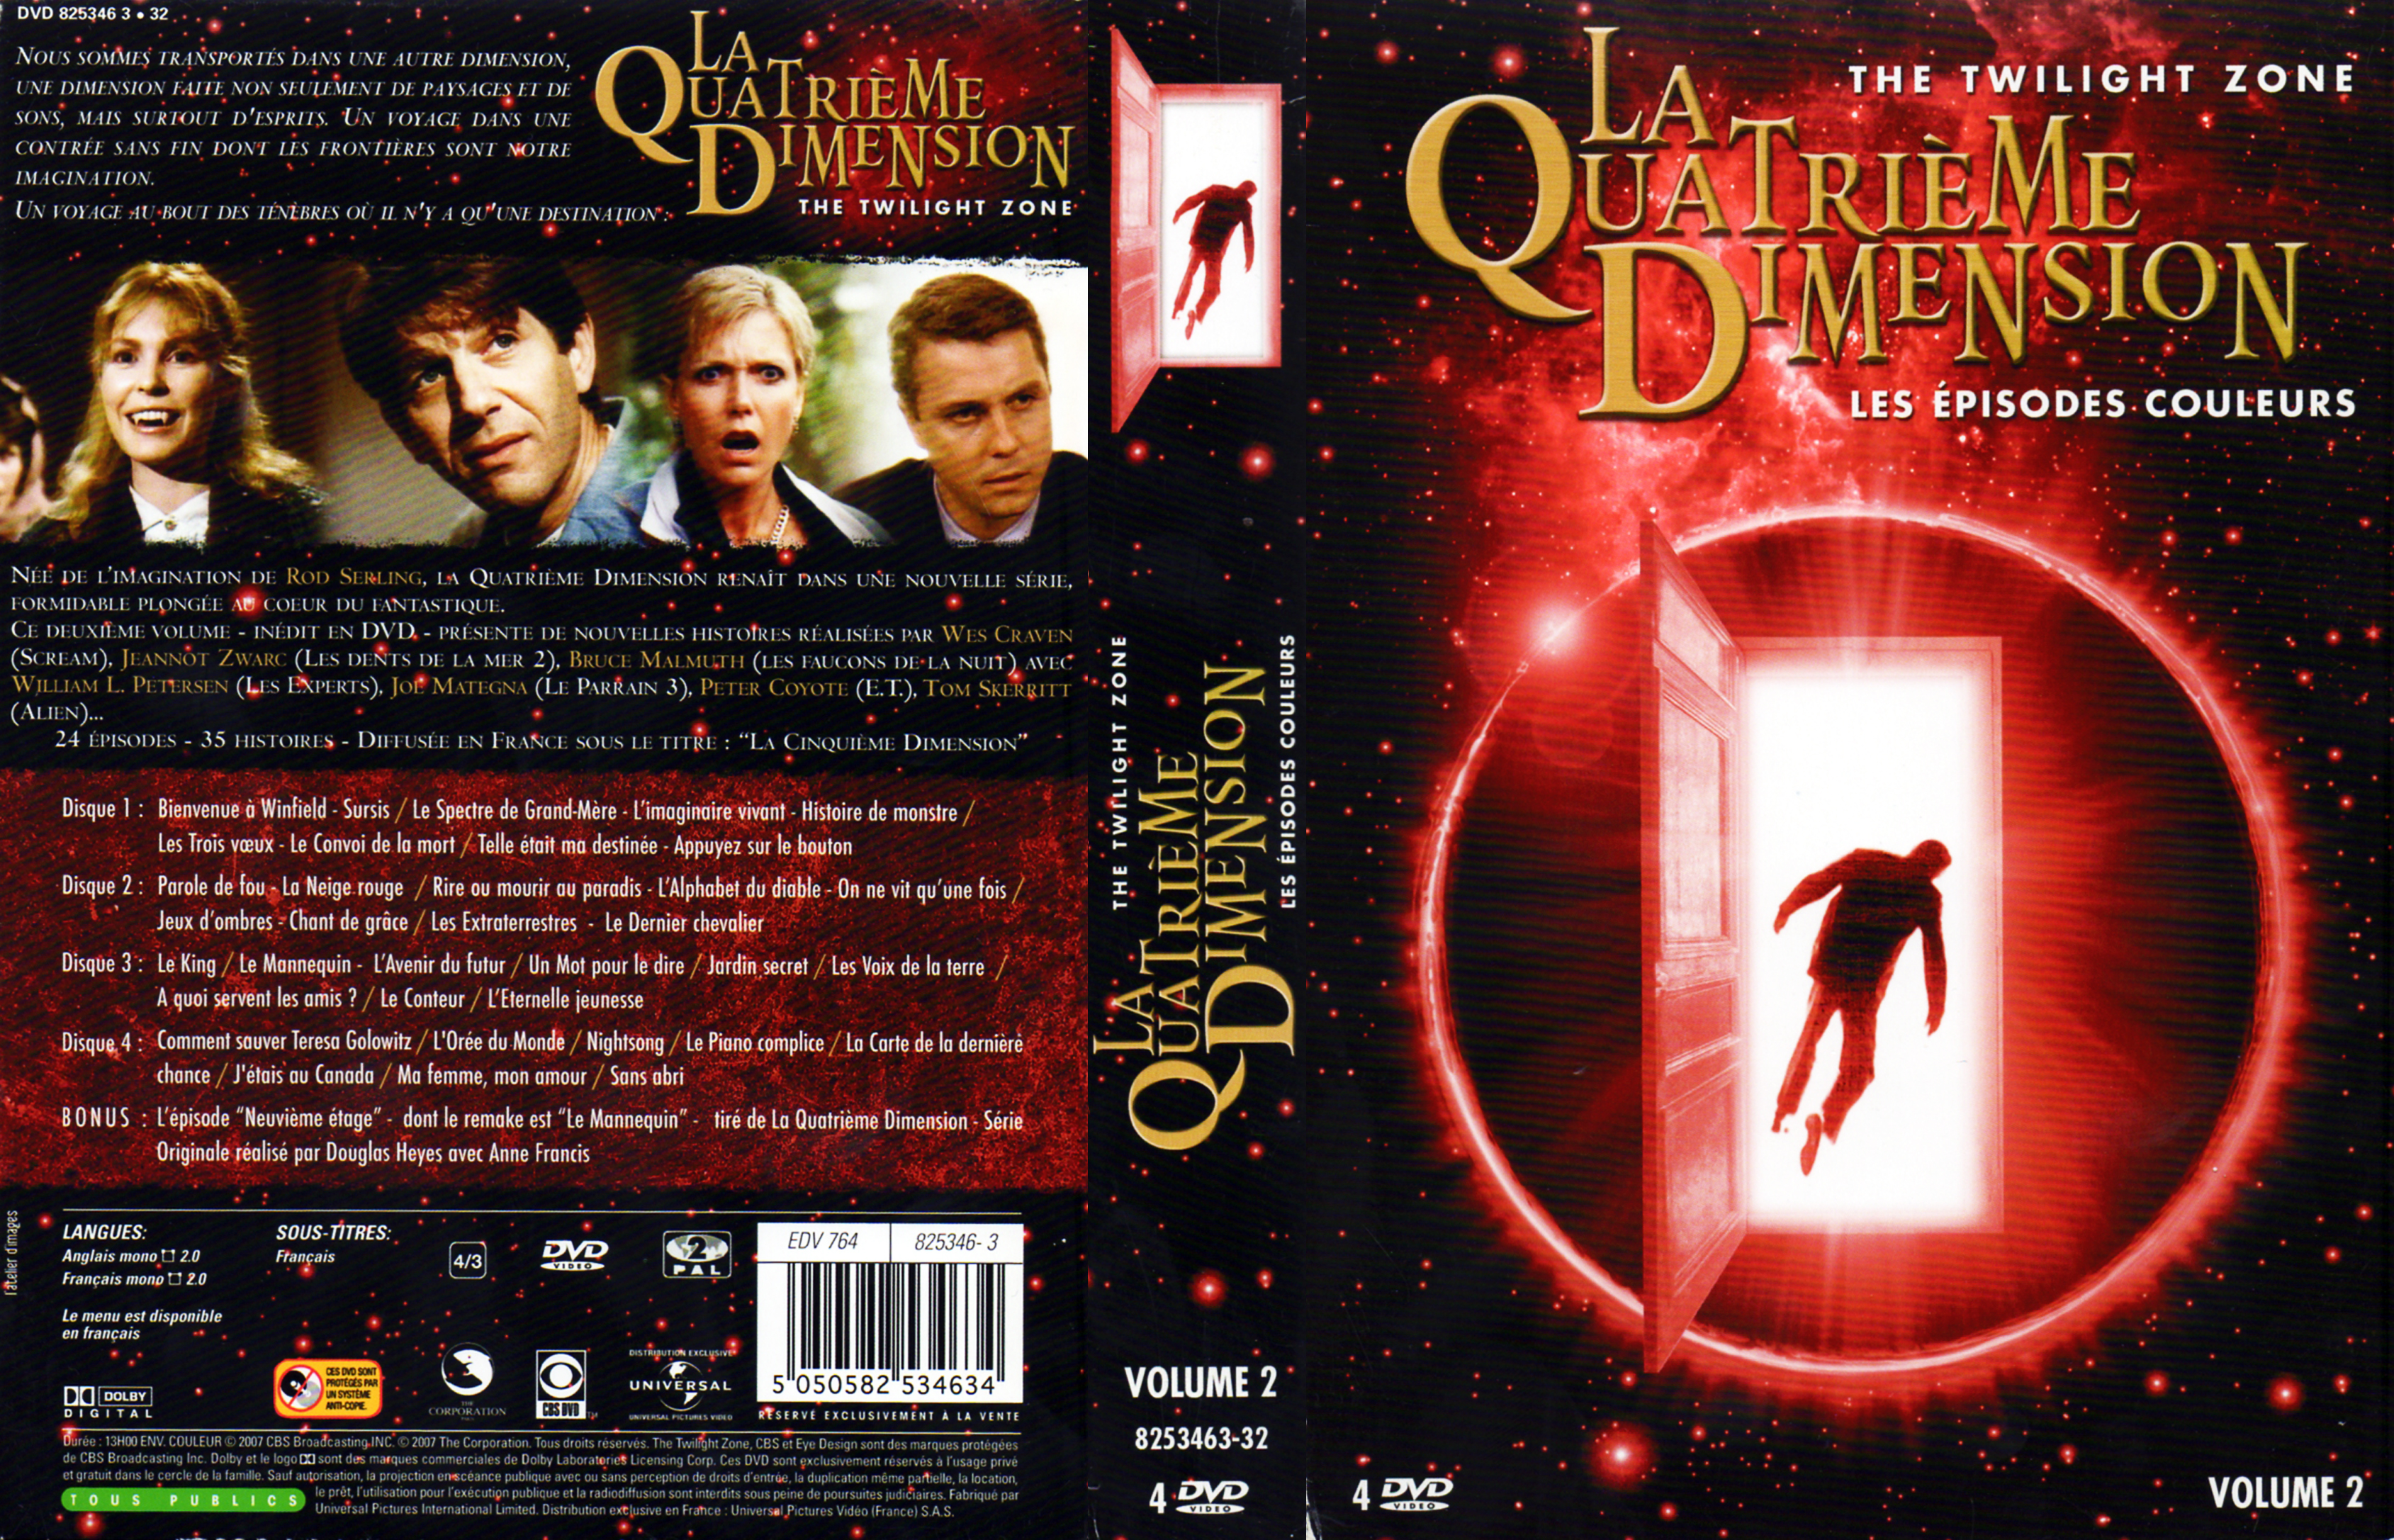 Jaquette DVD La quatrime dimension - Episodes couleurs vol 2